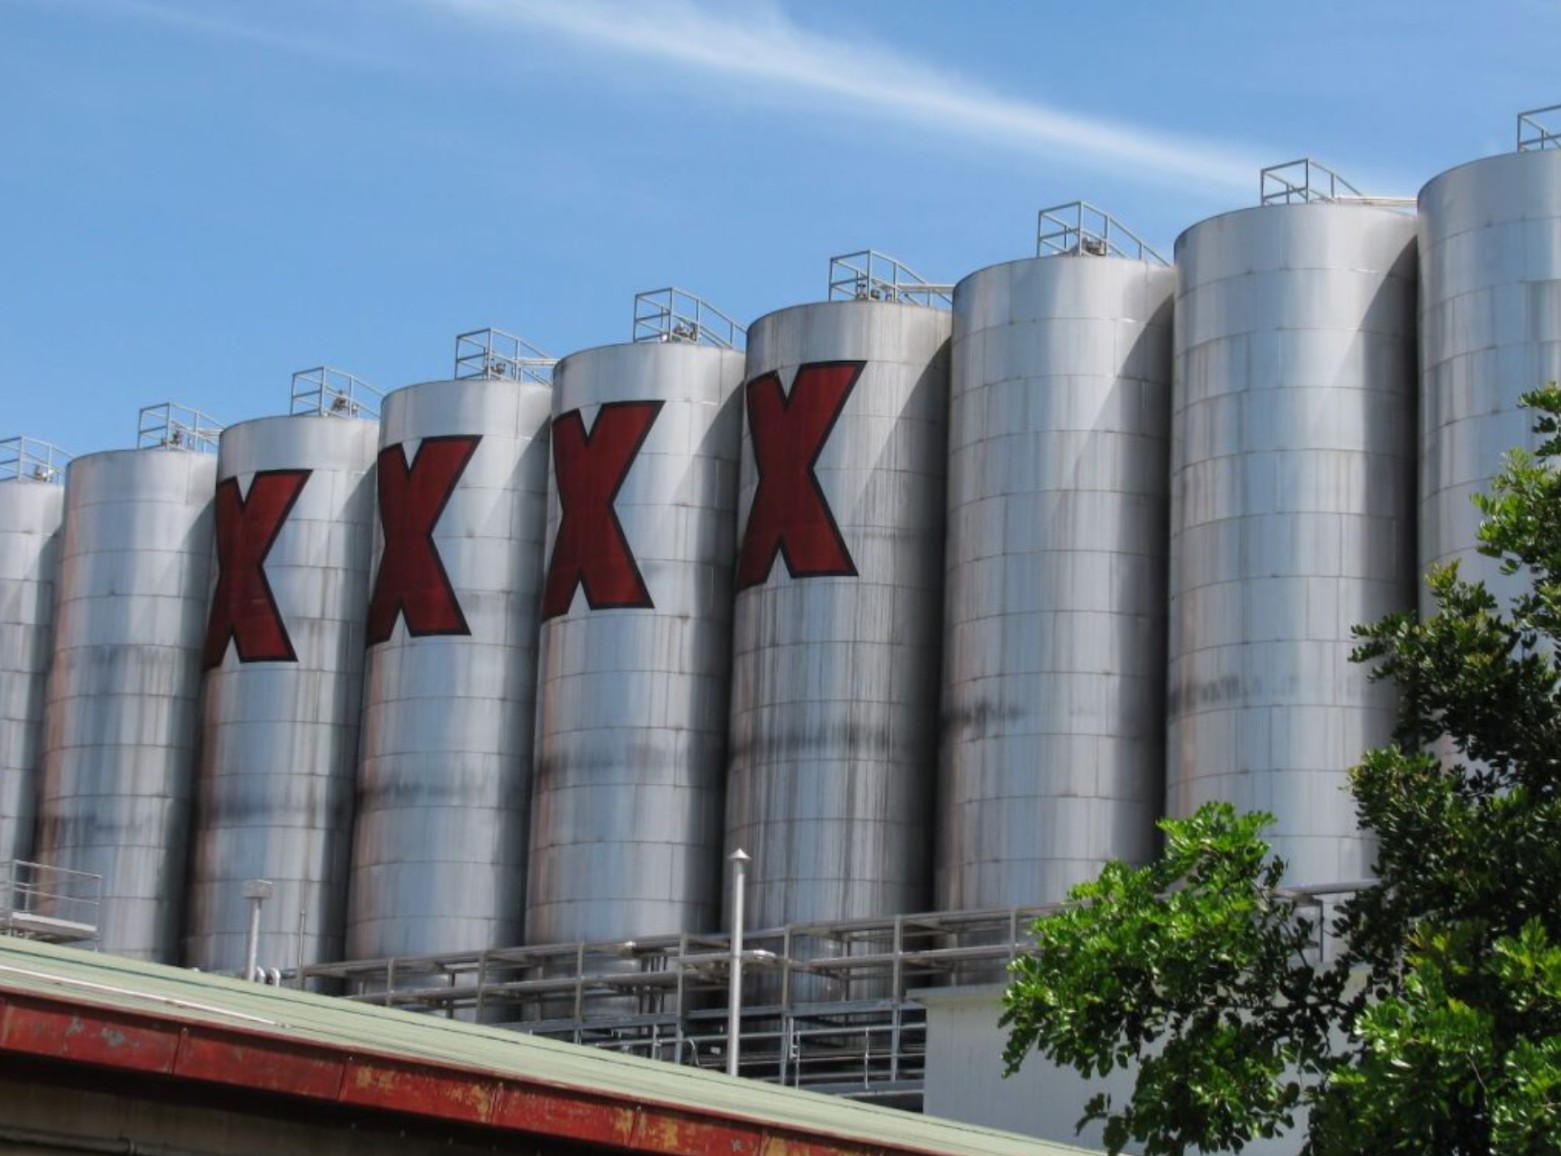 Xxx Brewery Brisbane Sex - Brisbane XXXX Brewery and Alehouse Tour in Brisbane | Pelago